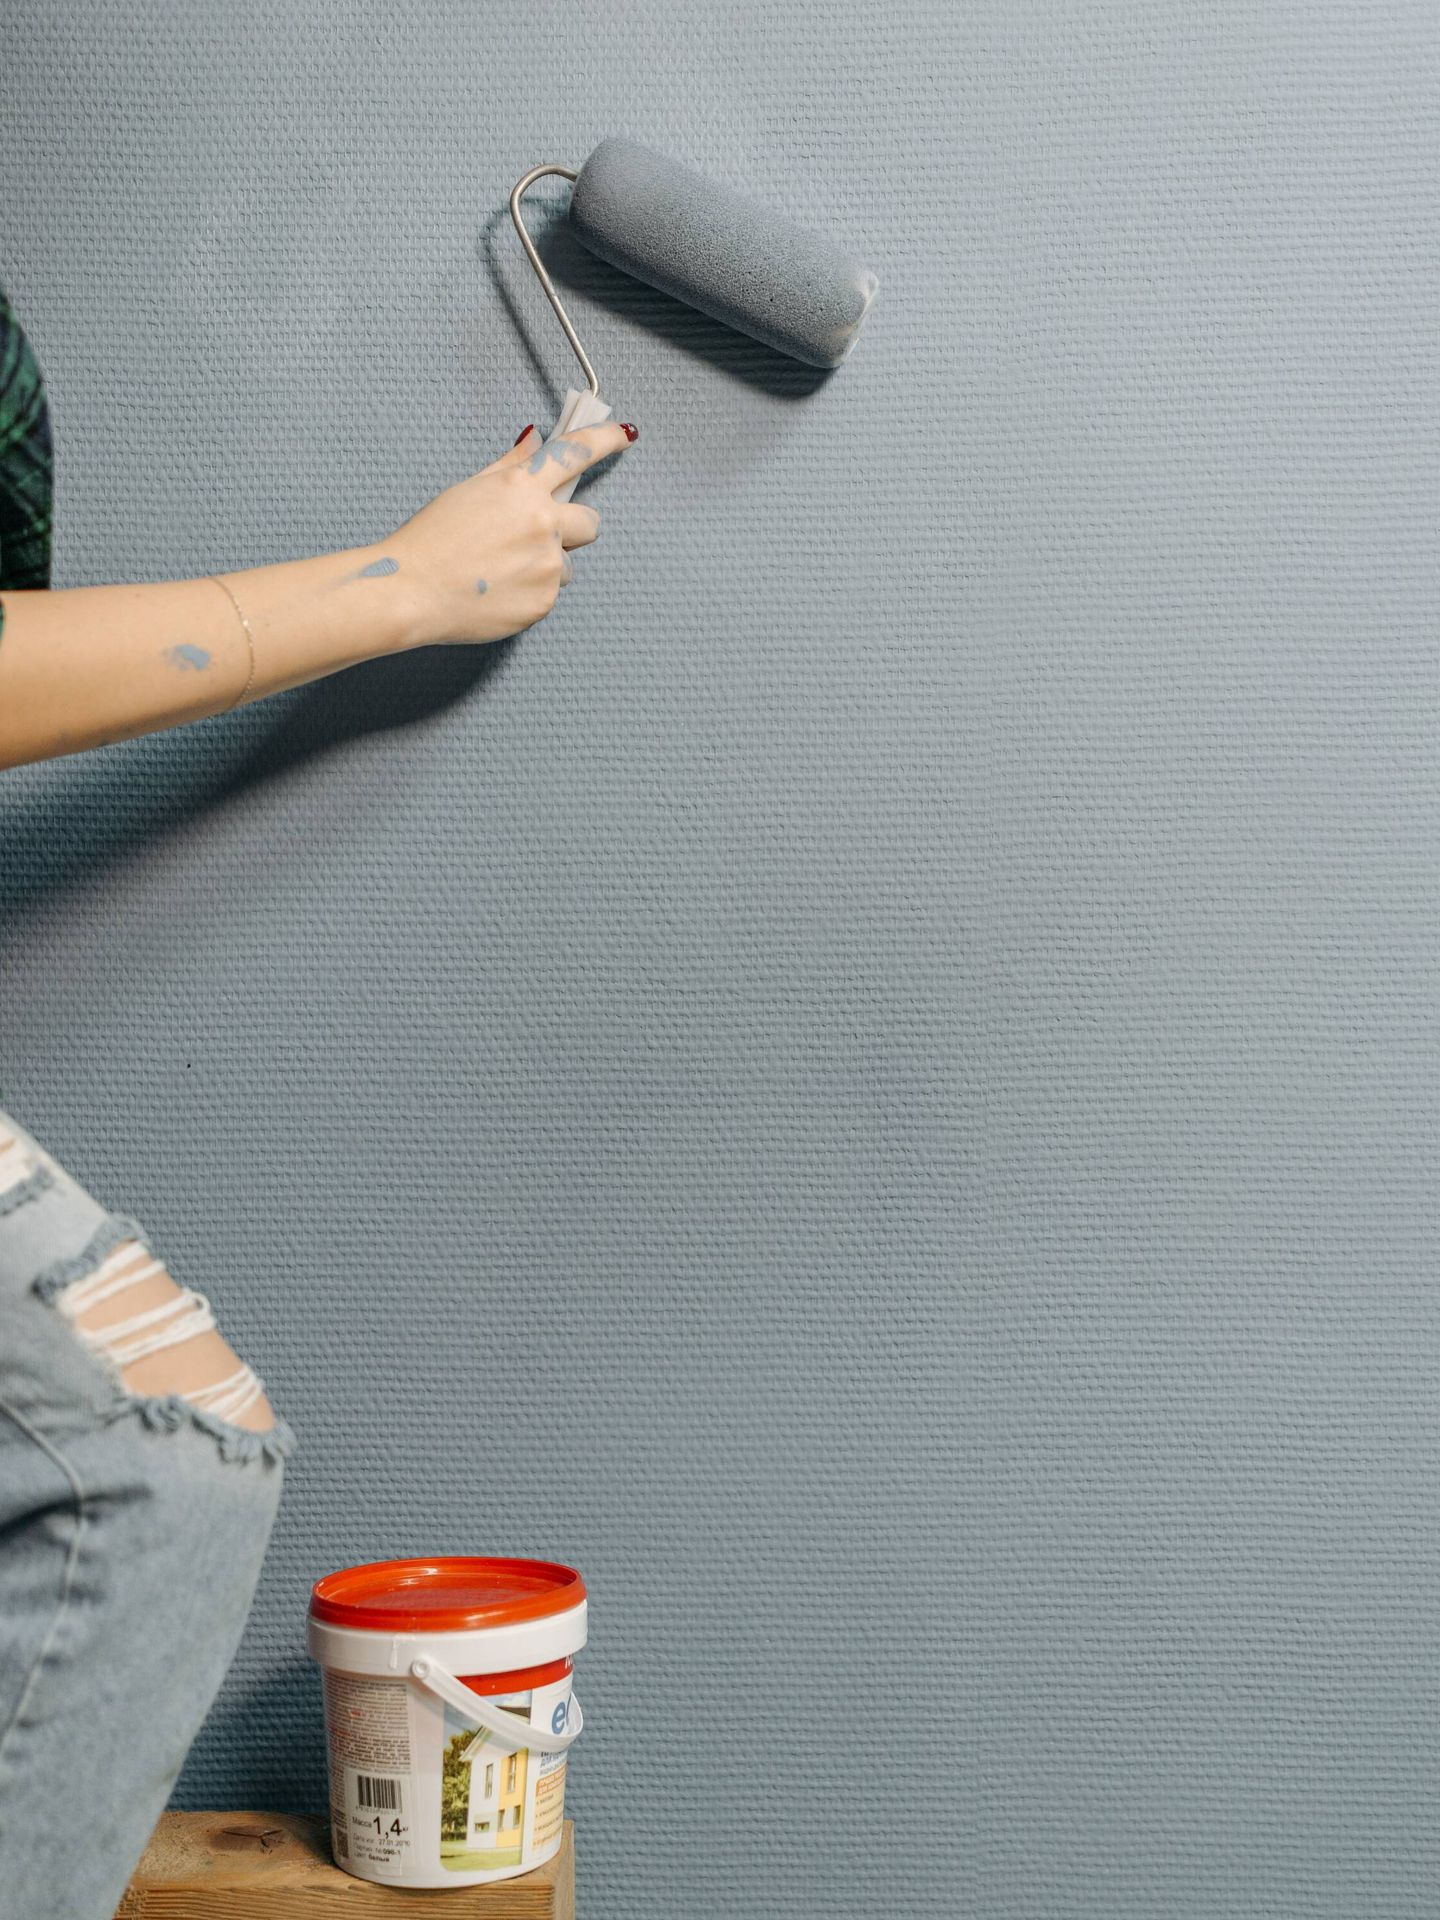 Pintar las paredes puede ser una buena actividad en familia. (Pexels/ Pavel Danilyuk)